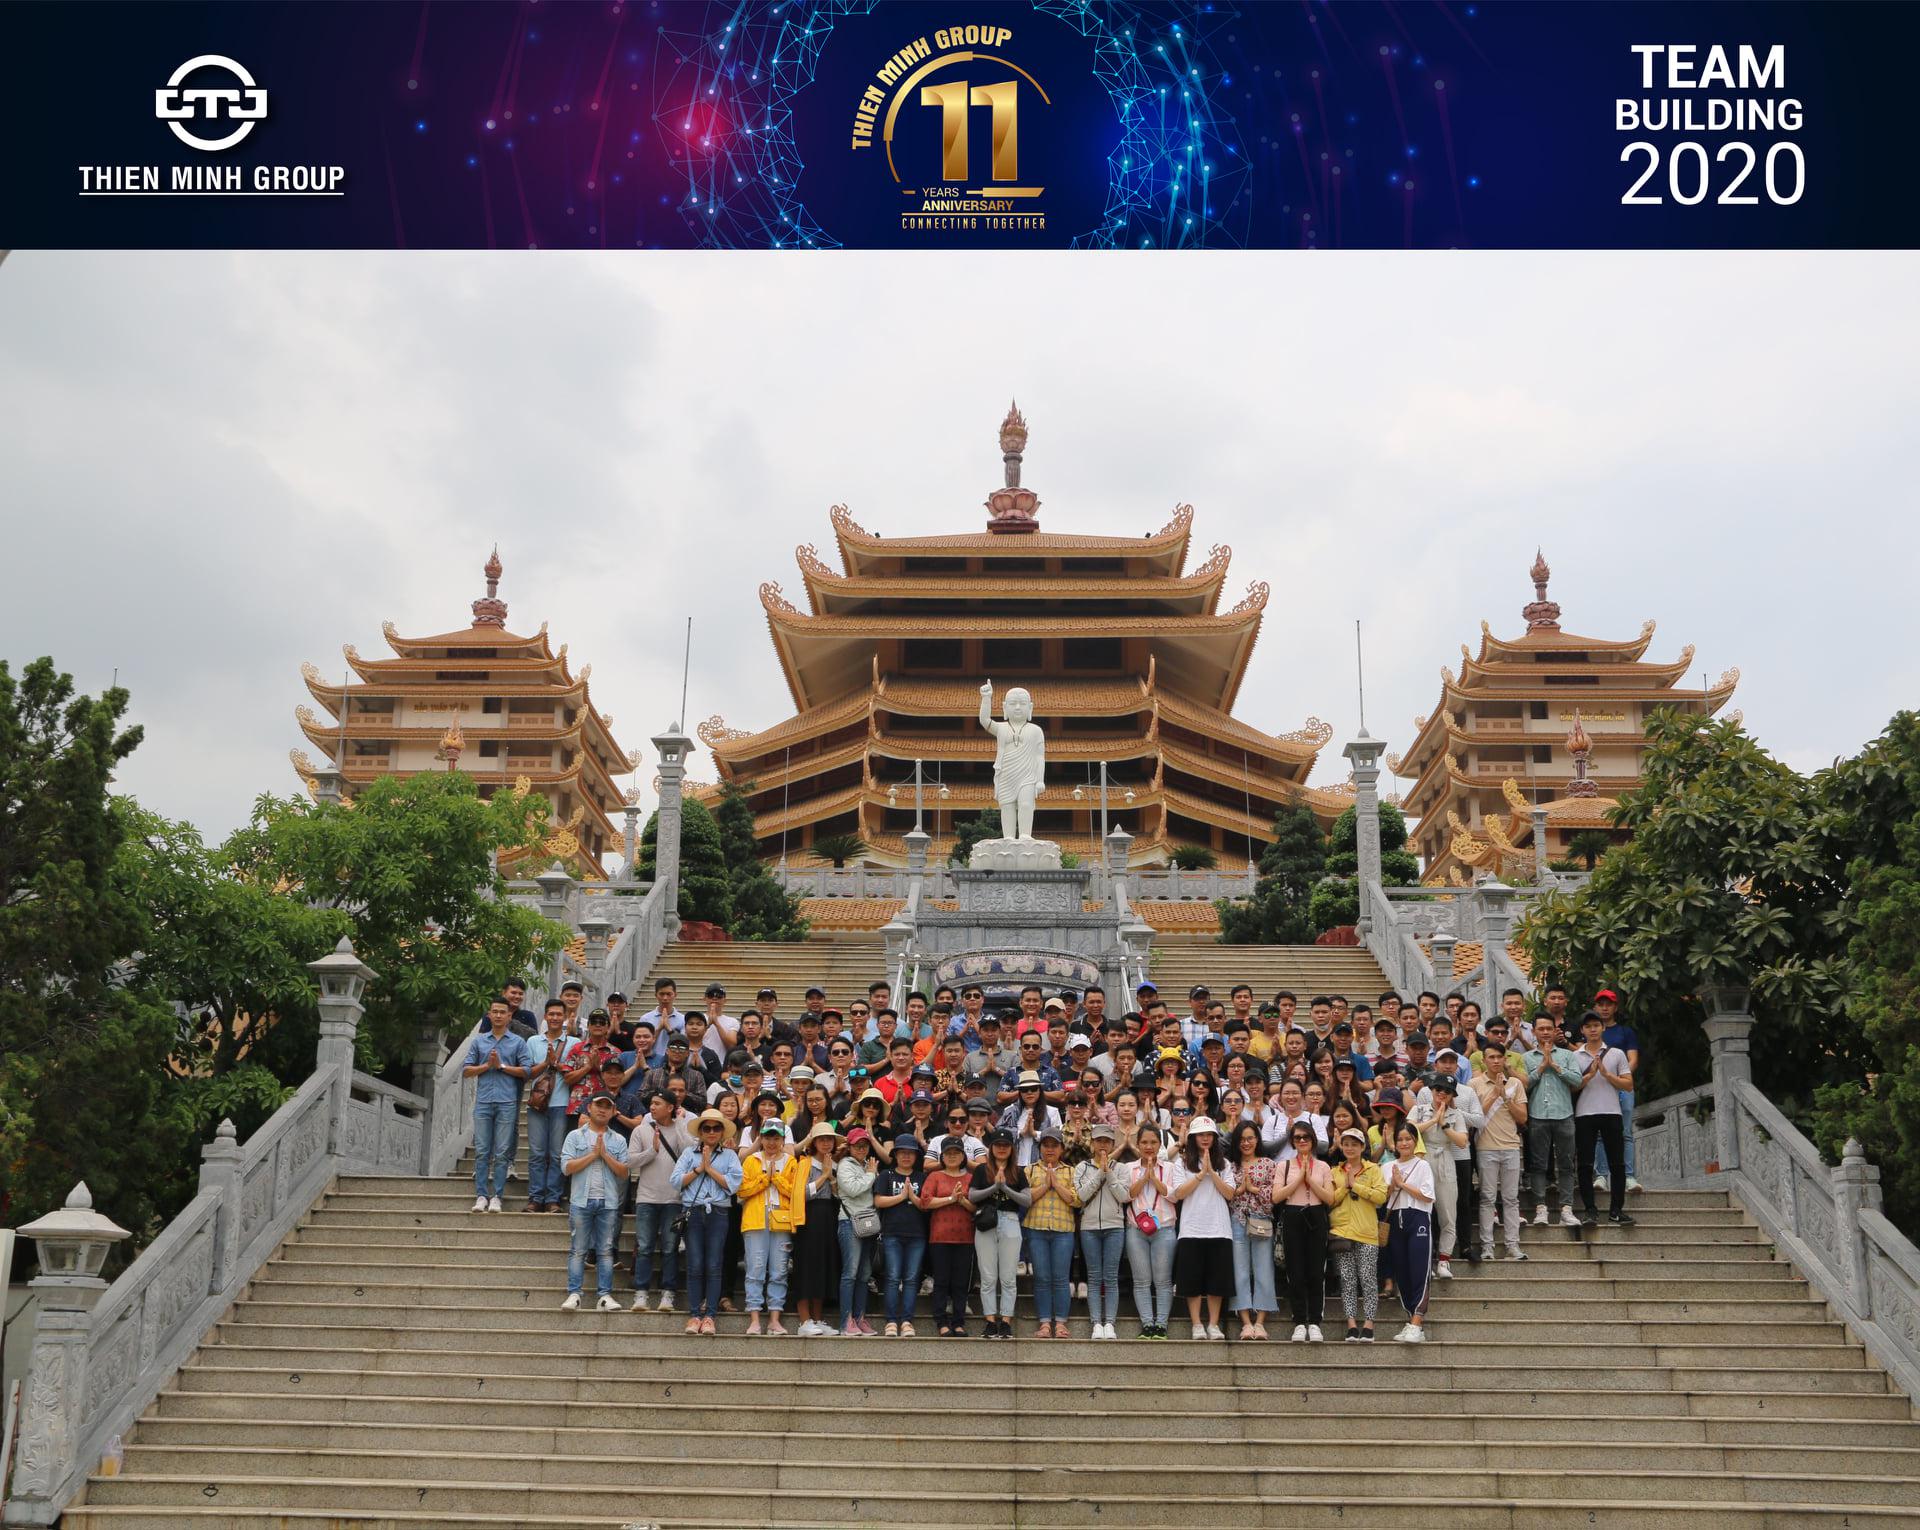 Khép lại chương trình du lịch TeamBuilding “Connecting Together” mừng kỷ niệm sinh nhật Tập đoàn tròn 11 tuổi, được tổ chức 02 ngày 09-10/6 tại Khu du lịch Suối Mơ.